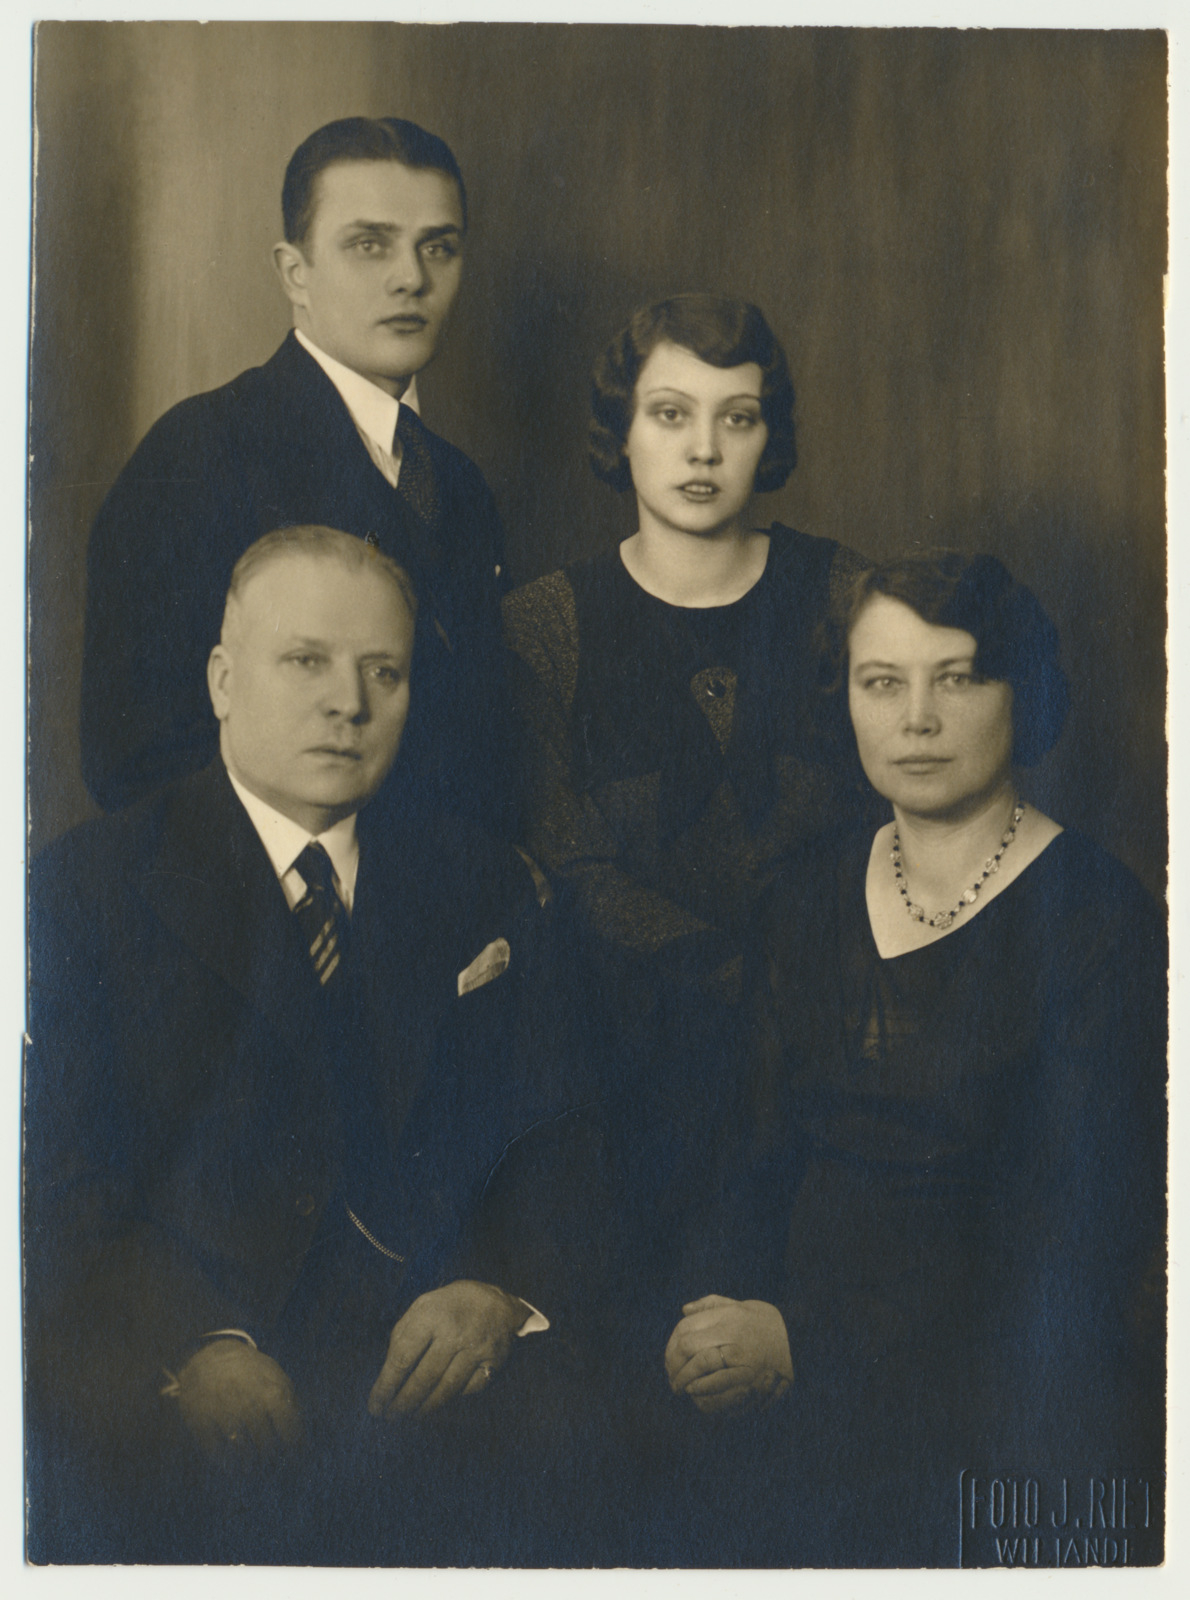 foto, Reinhold Simon, Viljandi linnapea 1921-1923, perega, u 1930